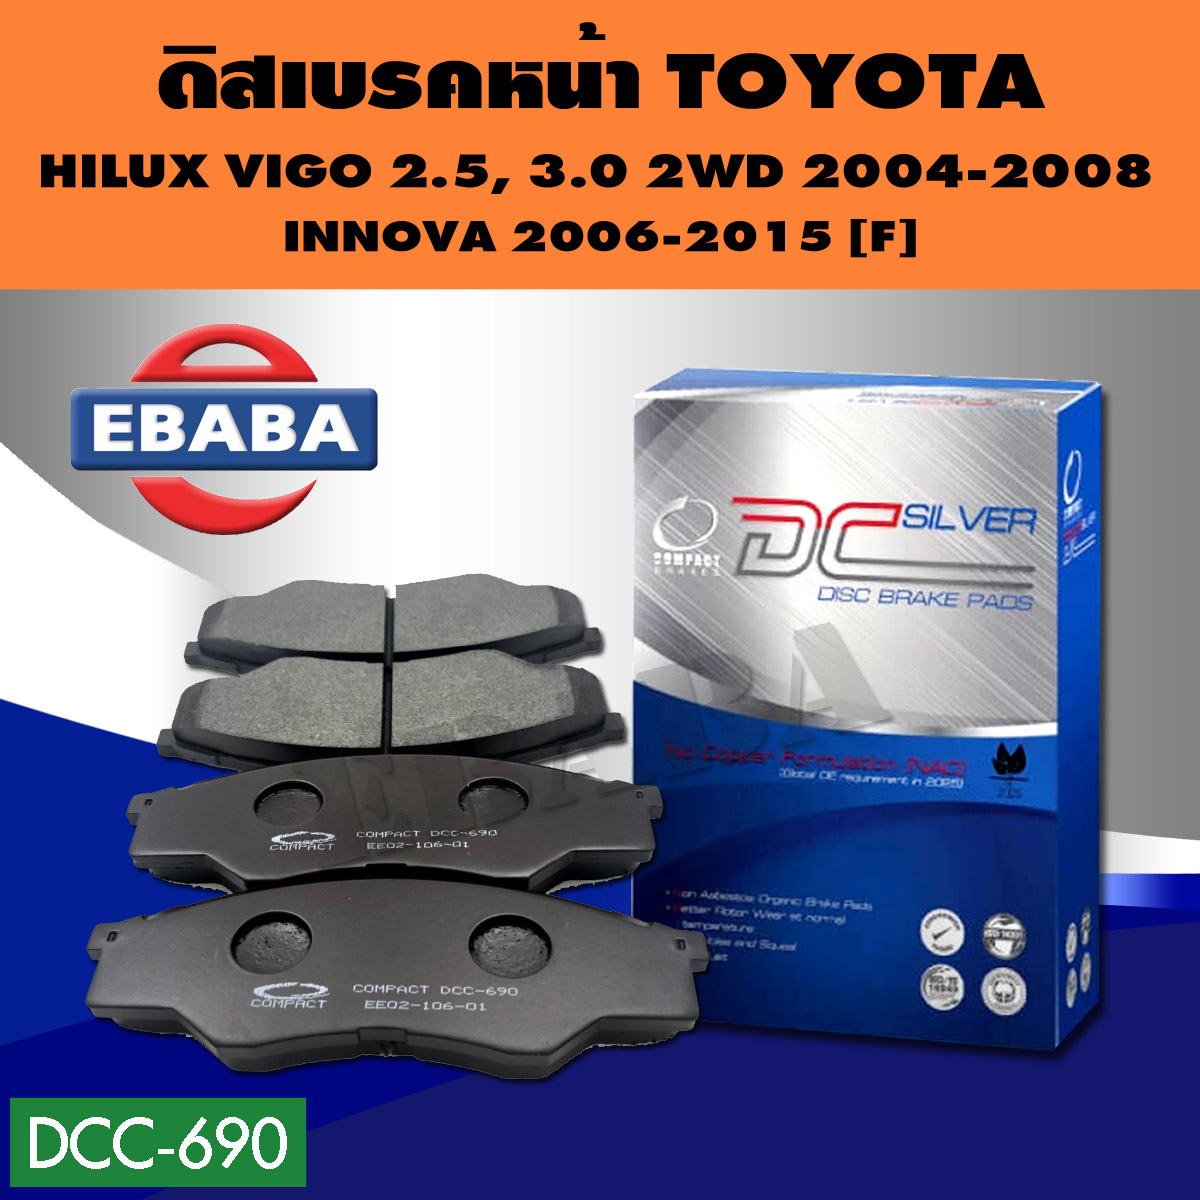 Compact Brakes ผ้าเบรคหน้าสำหรับ TOYOTA VIGO 2.5, 3.0 ปี 2004-2008 2WD (ผ้าเบรก วีโก้ขับสองต้วเตี้ยโฉมแรก) DCC-690